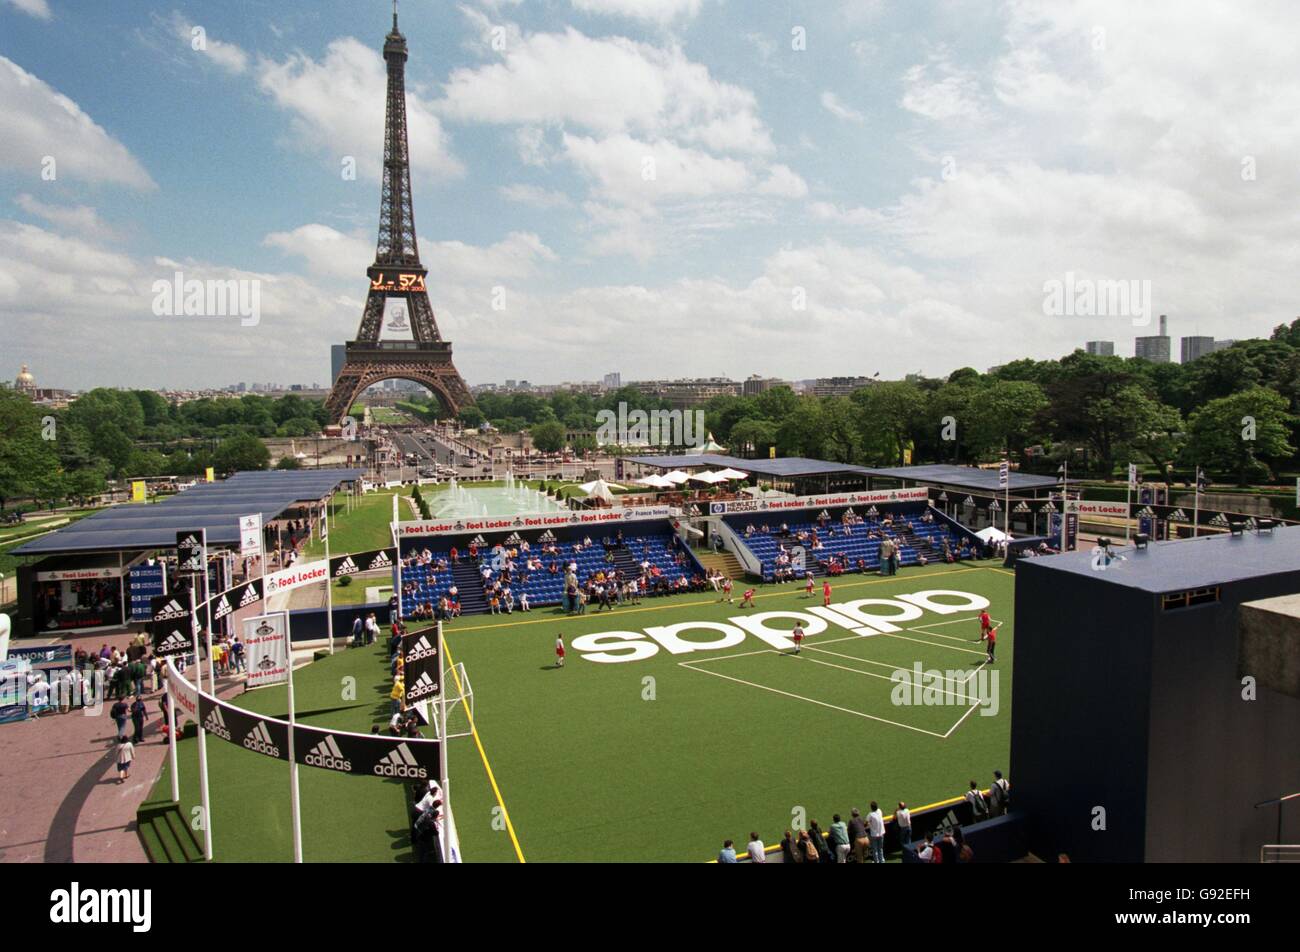 Fútbol Copa Mundial Francia 98 - Fiesta la El pueblo de Adidas de Trocadero, París de stock - Alamy